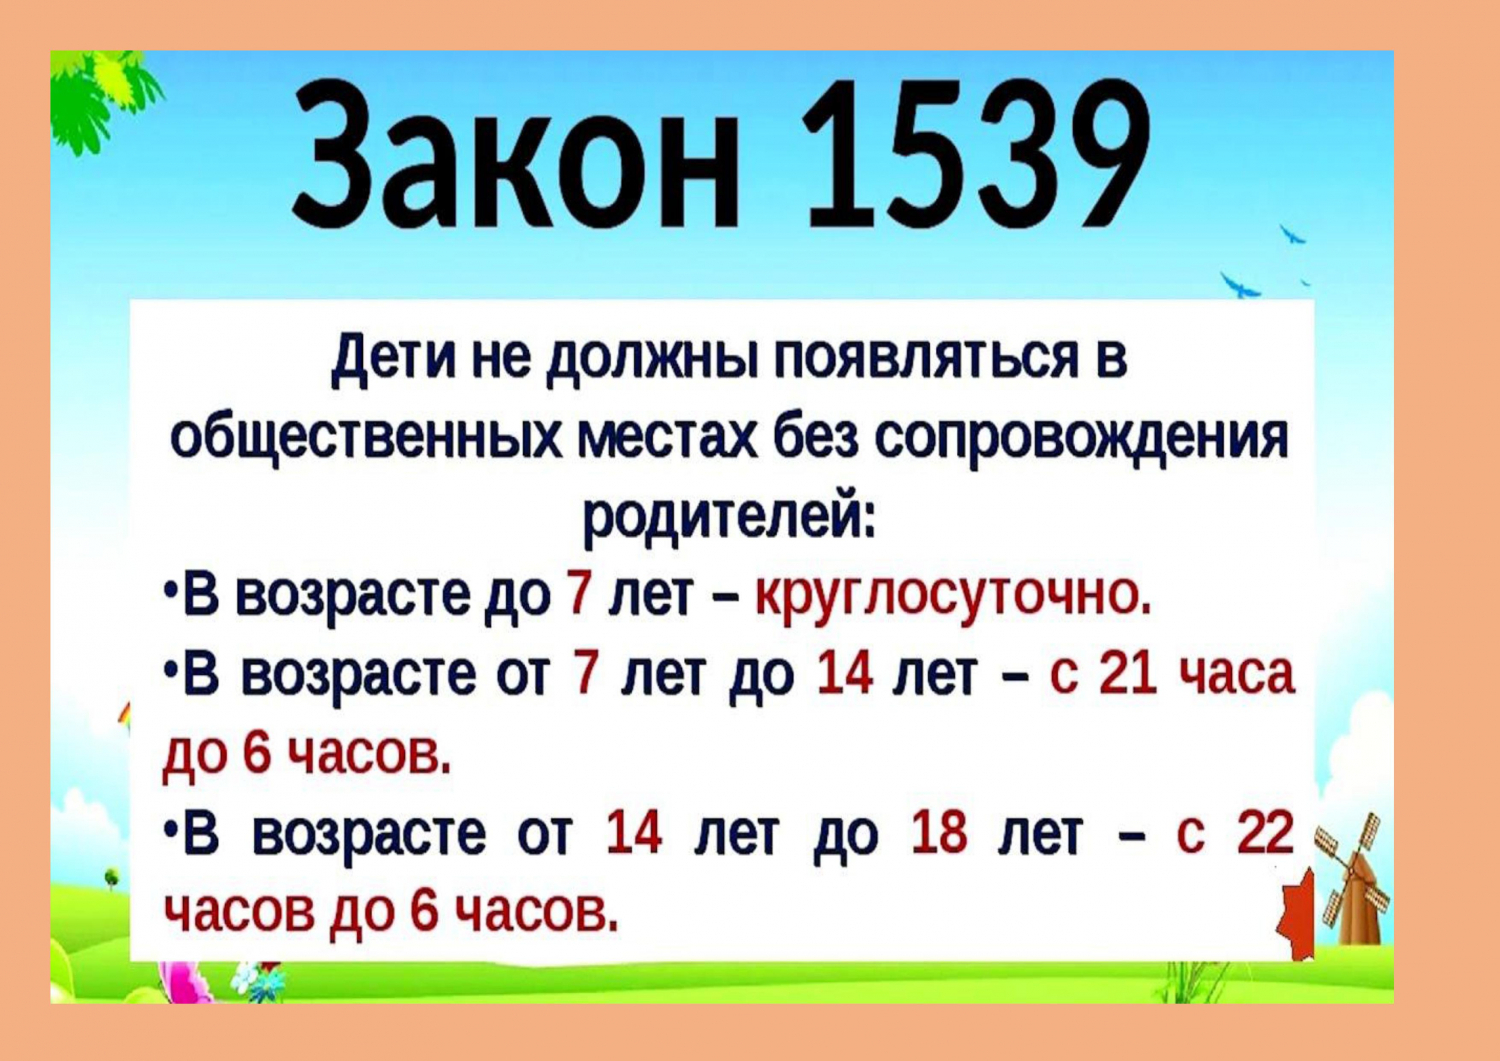 Закон Краснодарского края № 1539